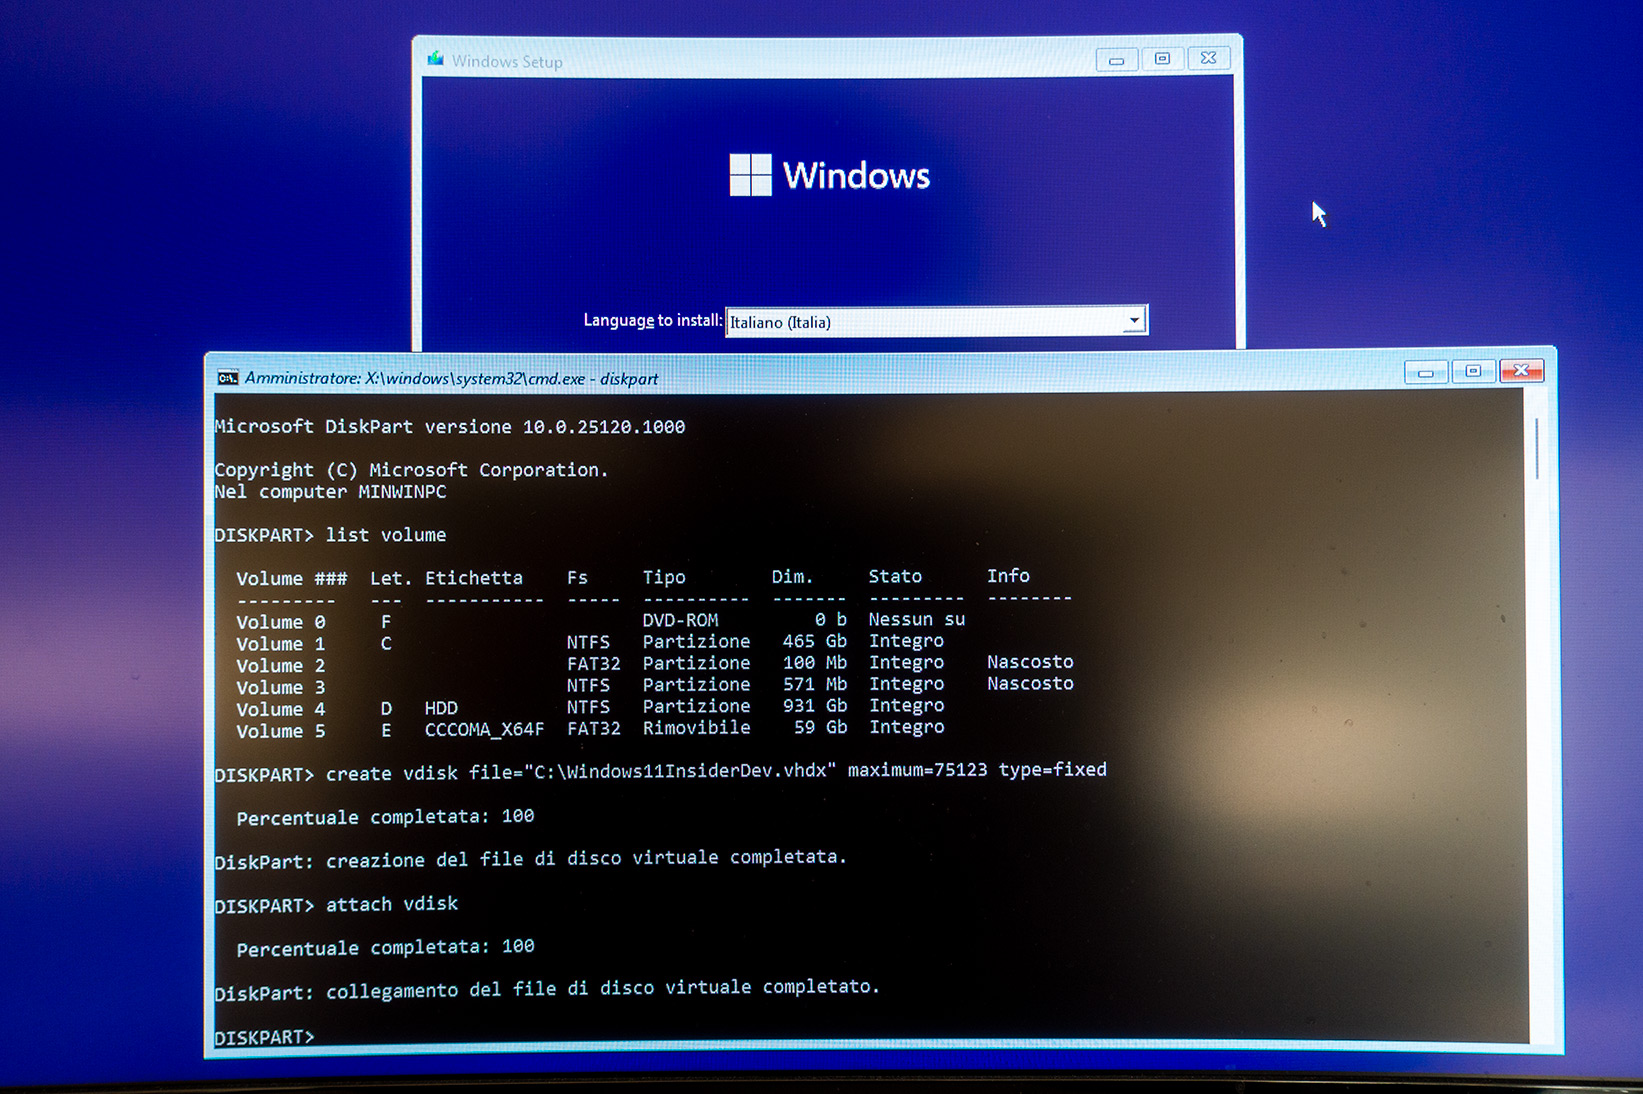 Windows Setup - Installazione - Prompt dei comandi con DiskPart